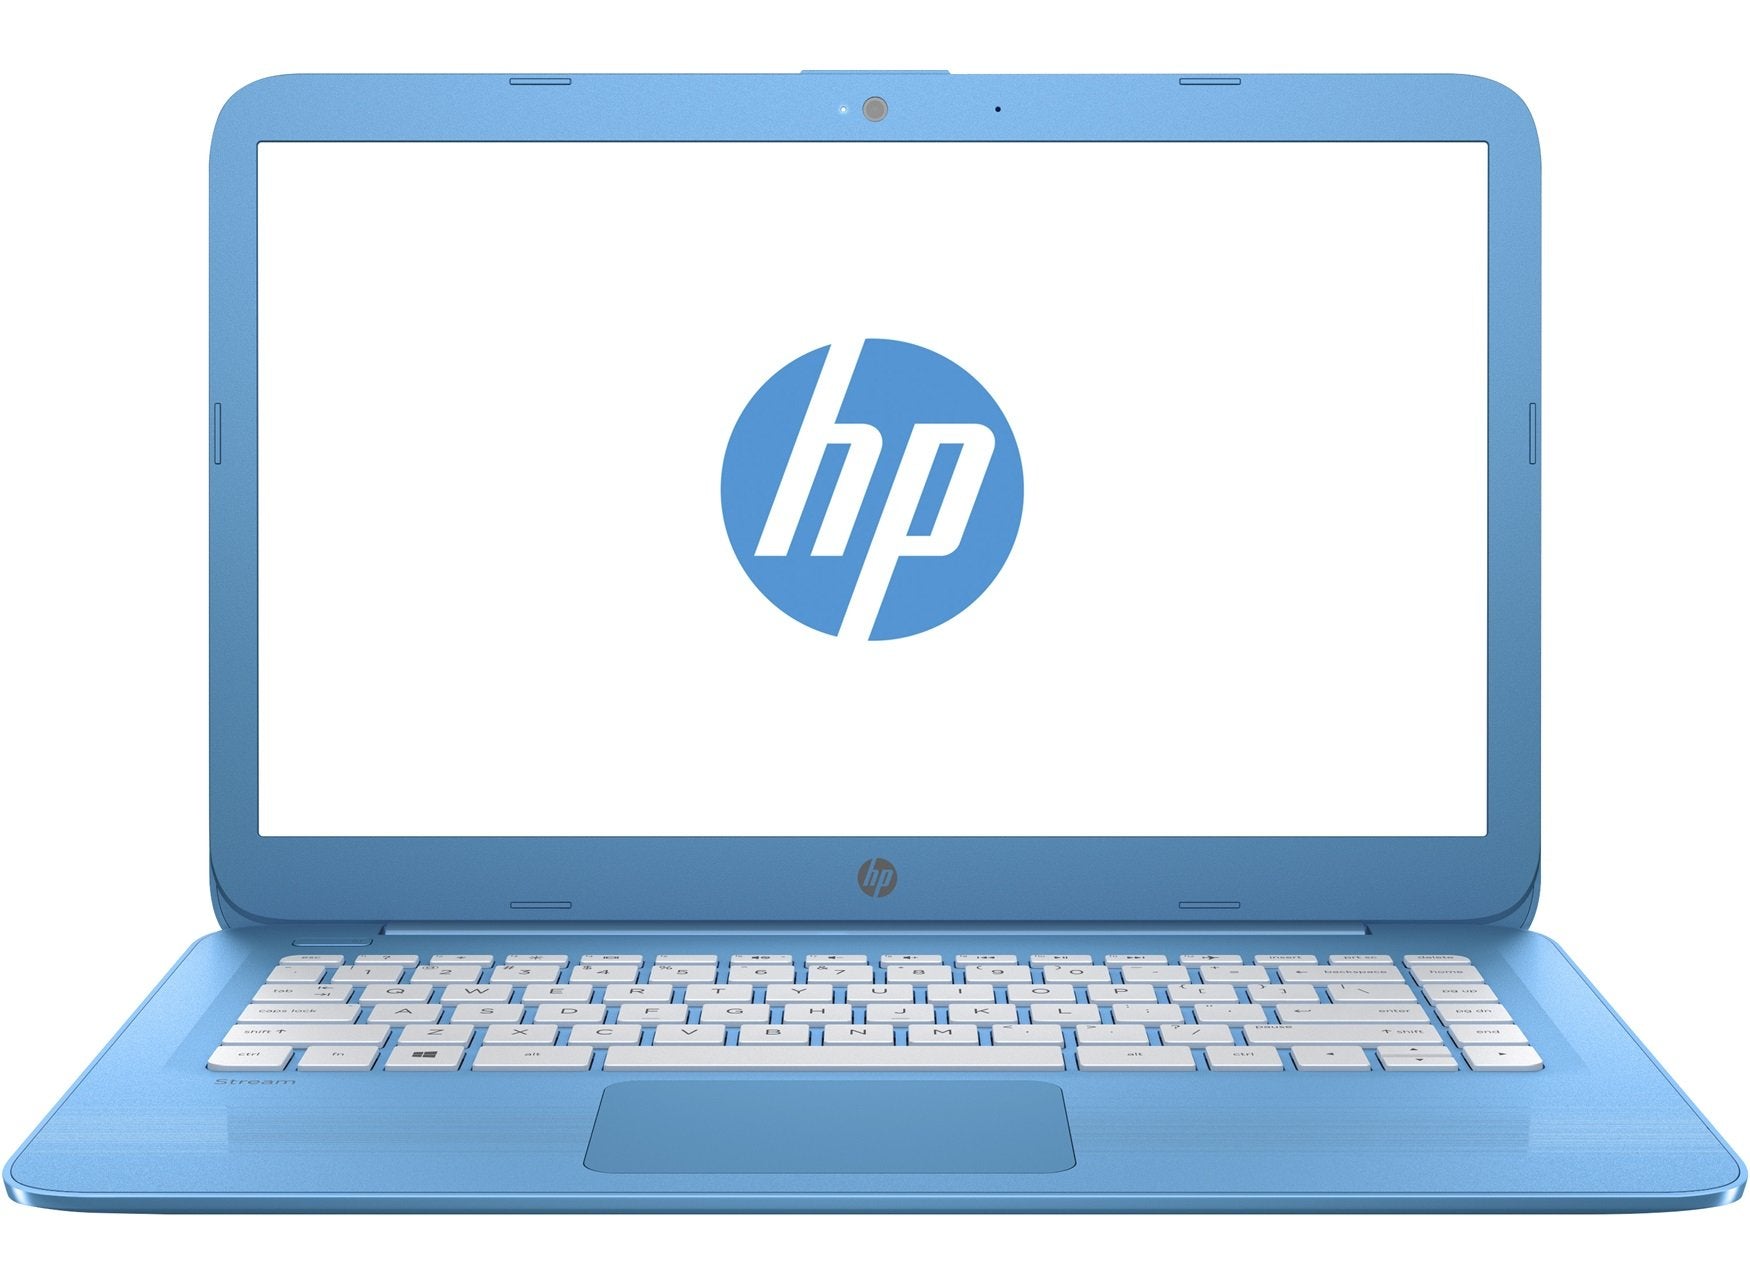 HP Stream Chromebook (11-r007tu), Celeron N2840, 2GB, 32GB EMMC, ChromeOS Flex - Refurbished Good Condition